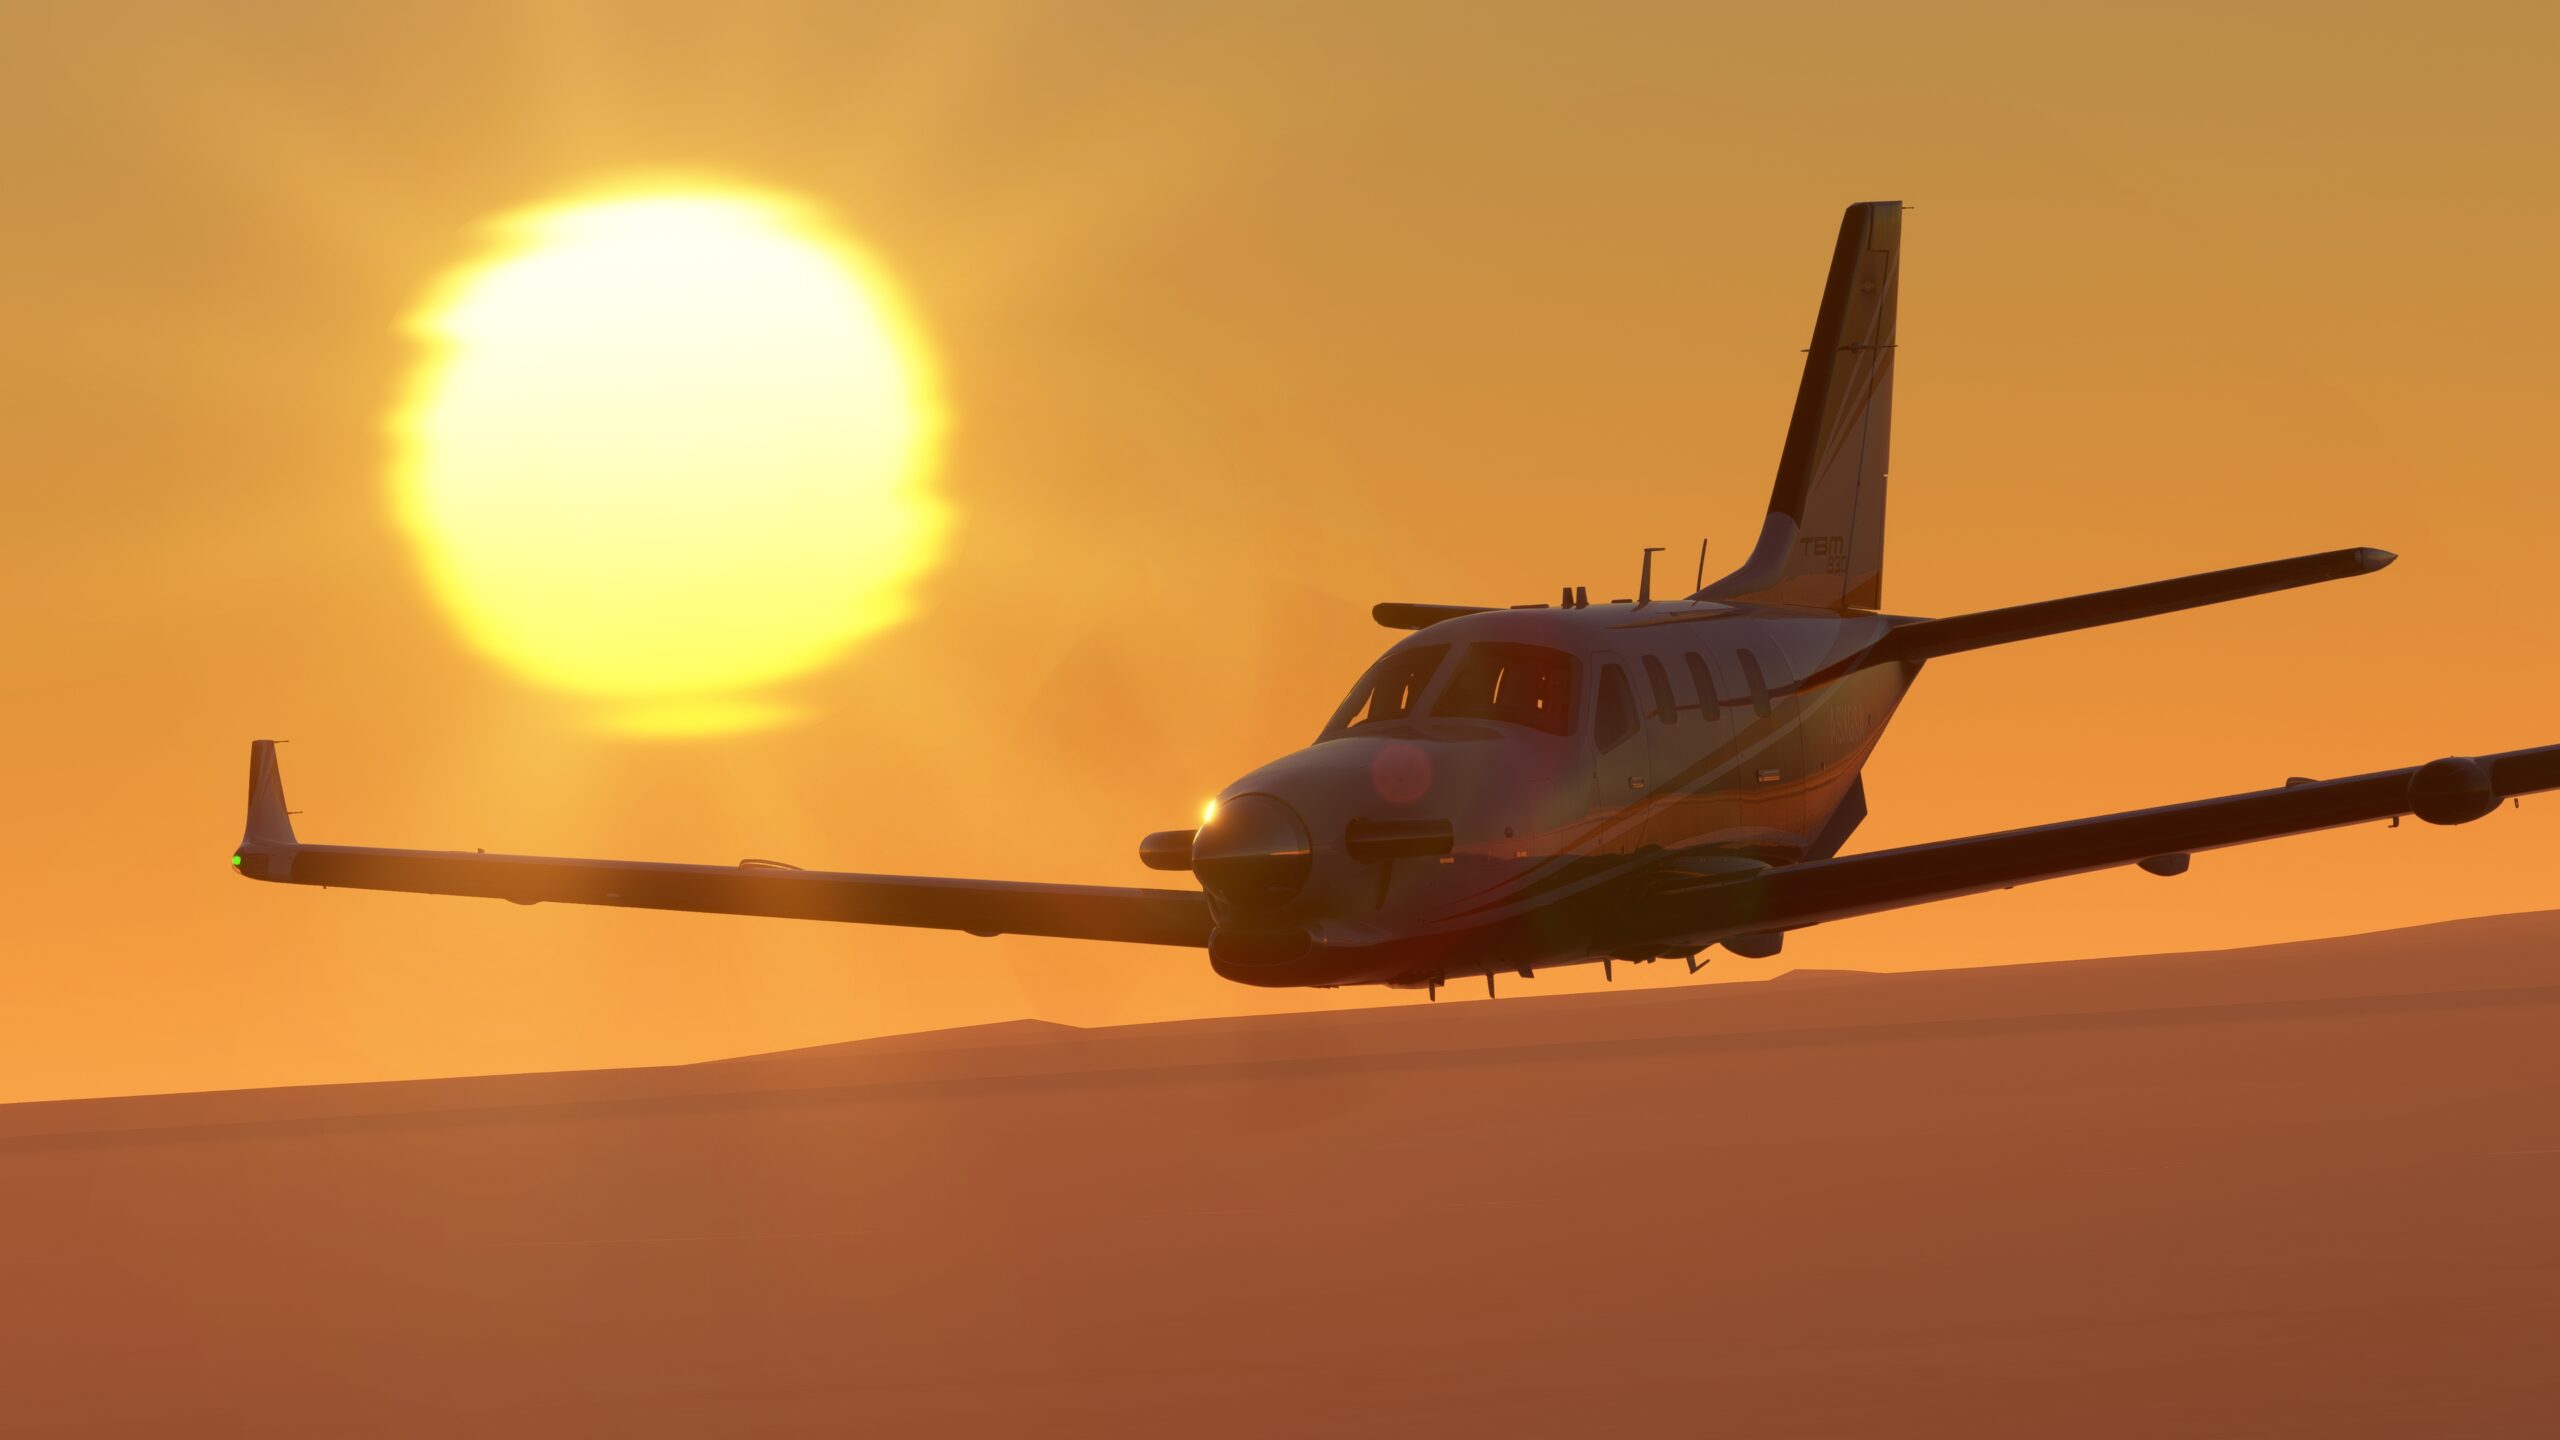 Avión de Microsoft Flight Simulator volando contra una puesta de sol naranja